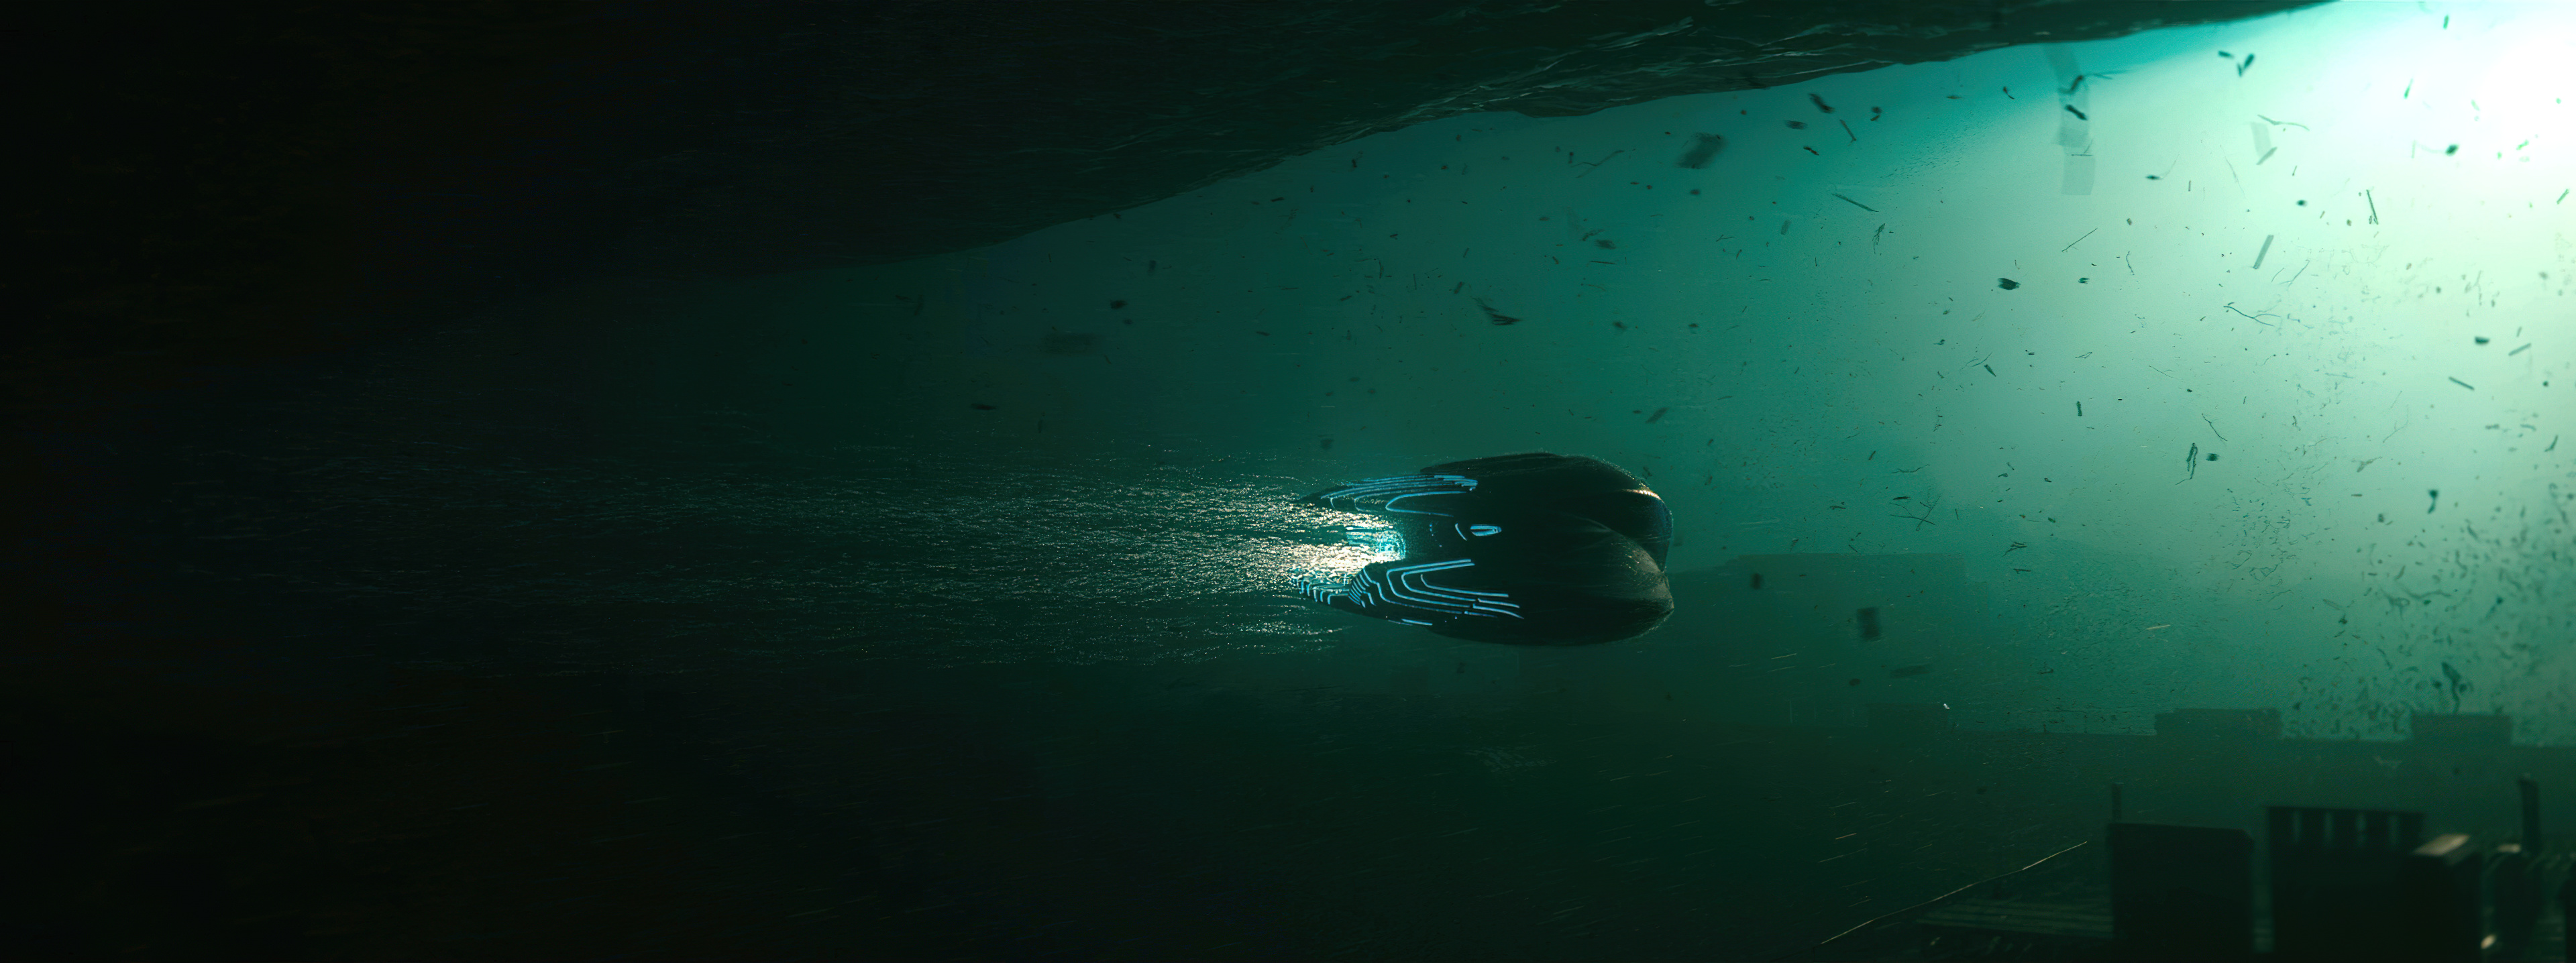 Подводный корабль с ядерным двигателем, Плавающее НЛО, Город под водой